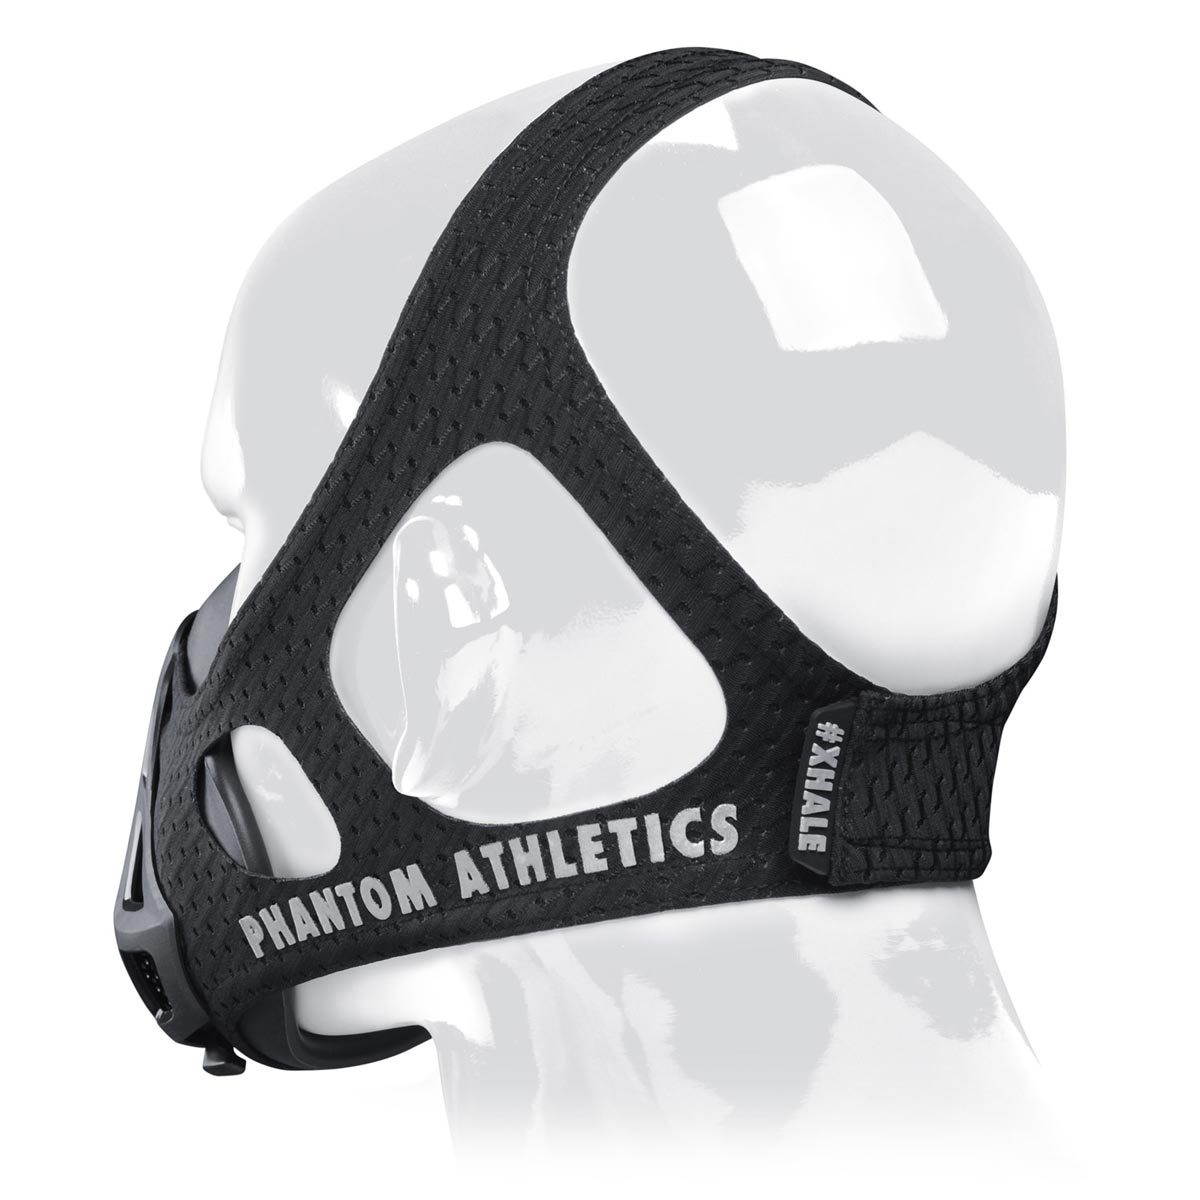 Die Phantom Trainingsmaske verfügt über ein patentiertes Kopfband um dir ein Maximum an Halt im Training zu geben. Jetzt in Limitierter Carbon Edition.